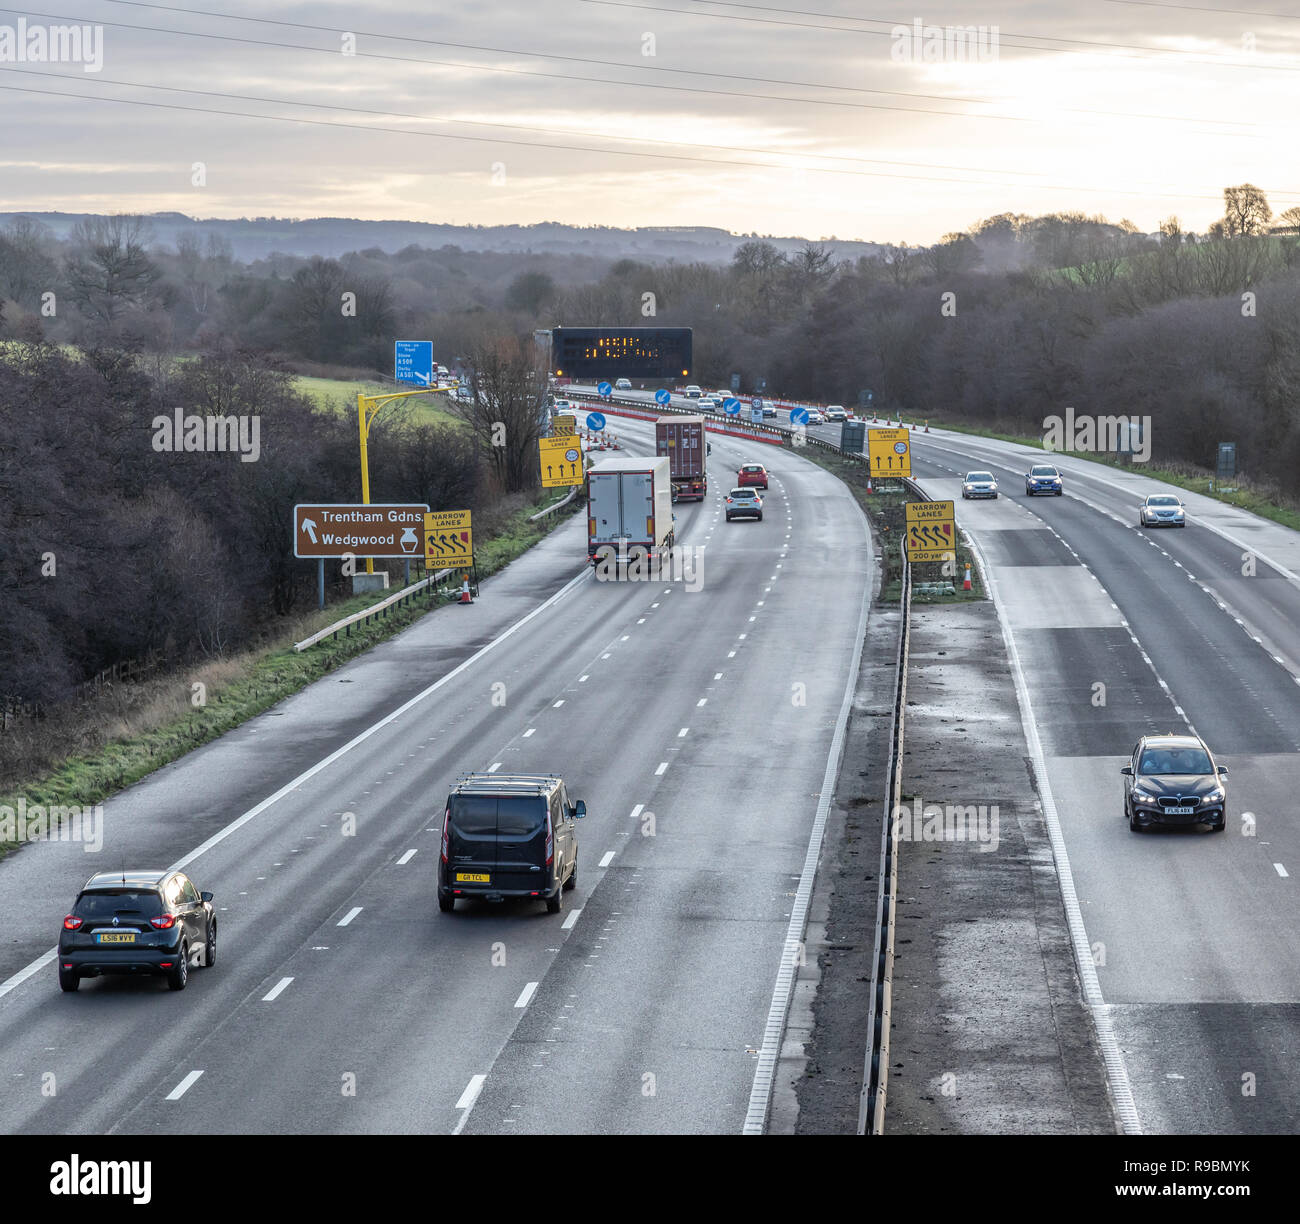 Traffico Autostradale autostradale e opere di miglioramento per rendere l'una smart alla rete autostradale Foto Stock